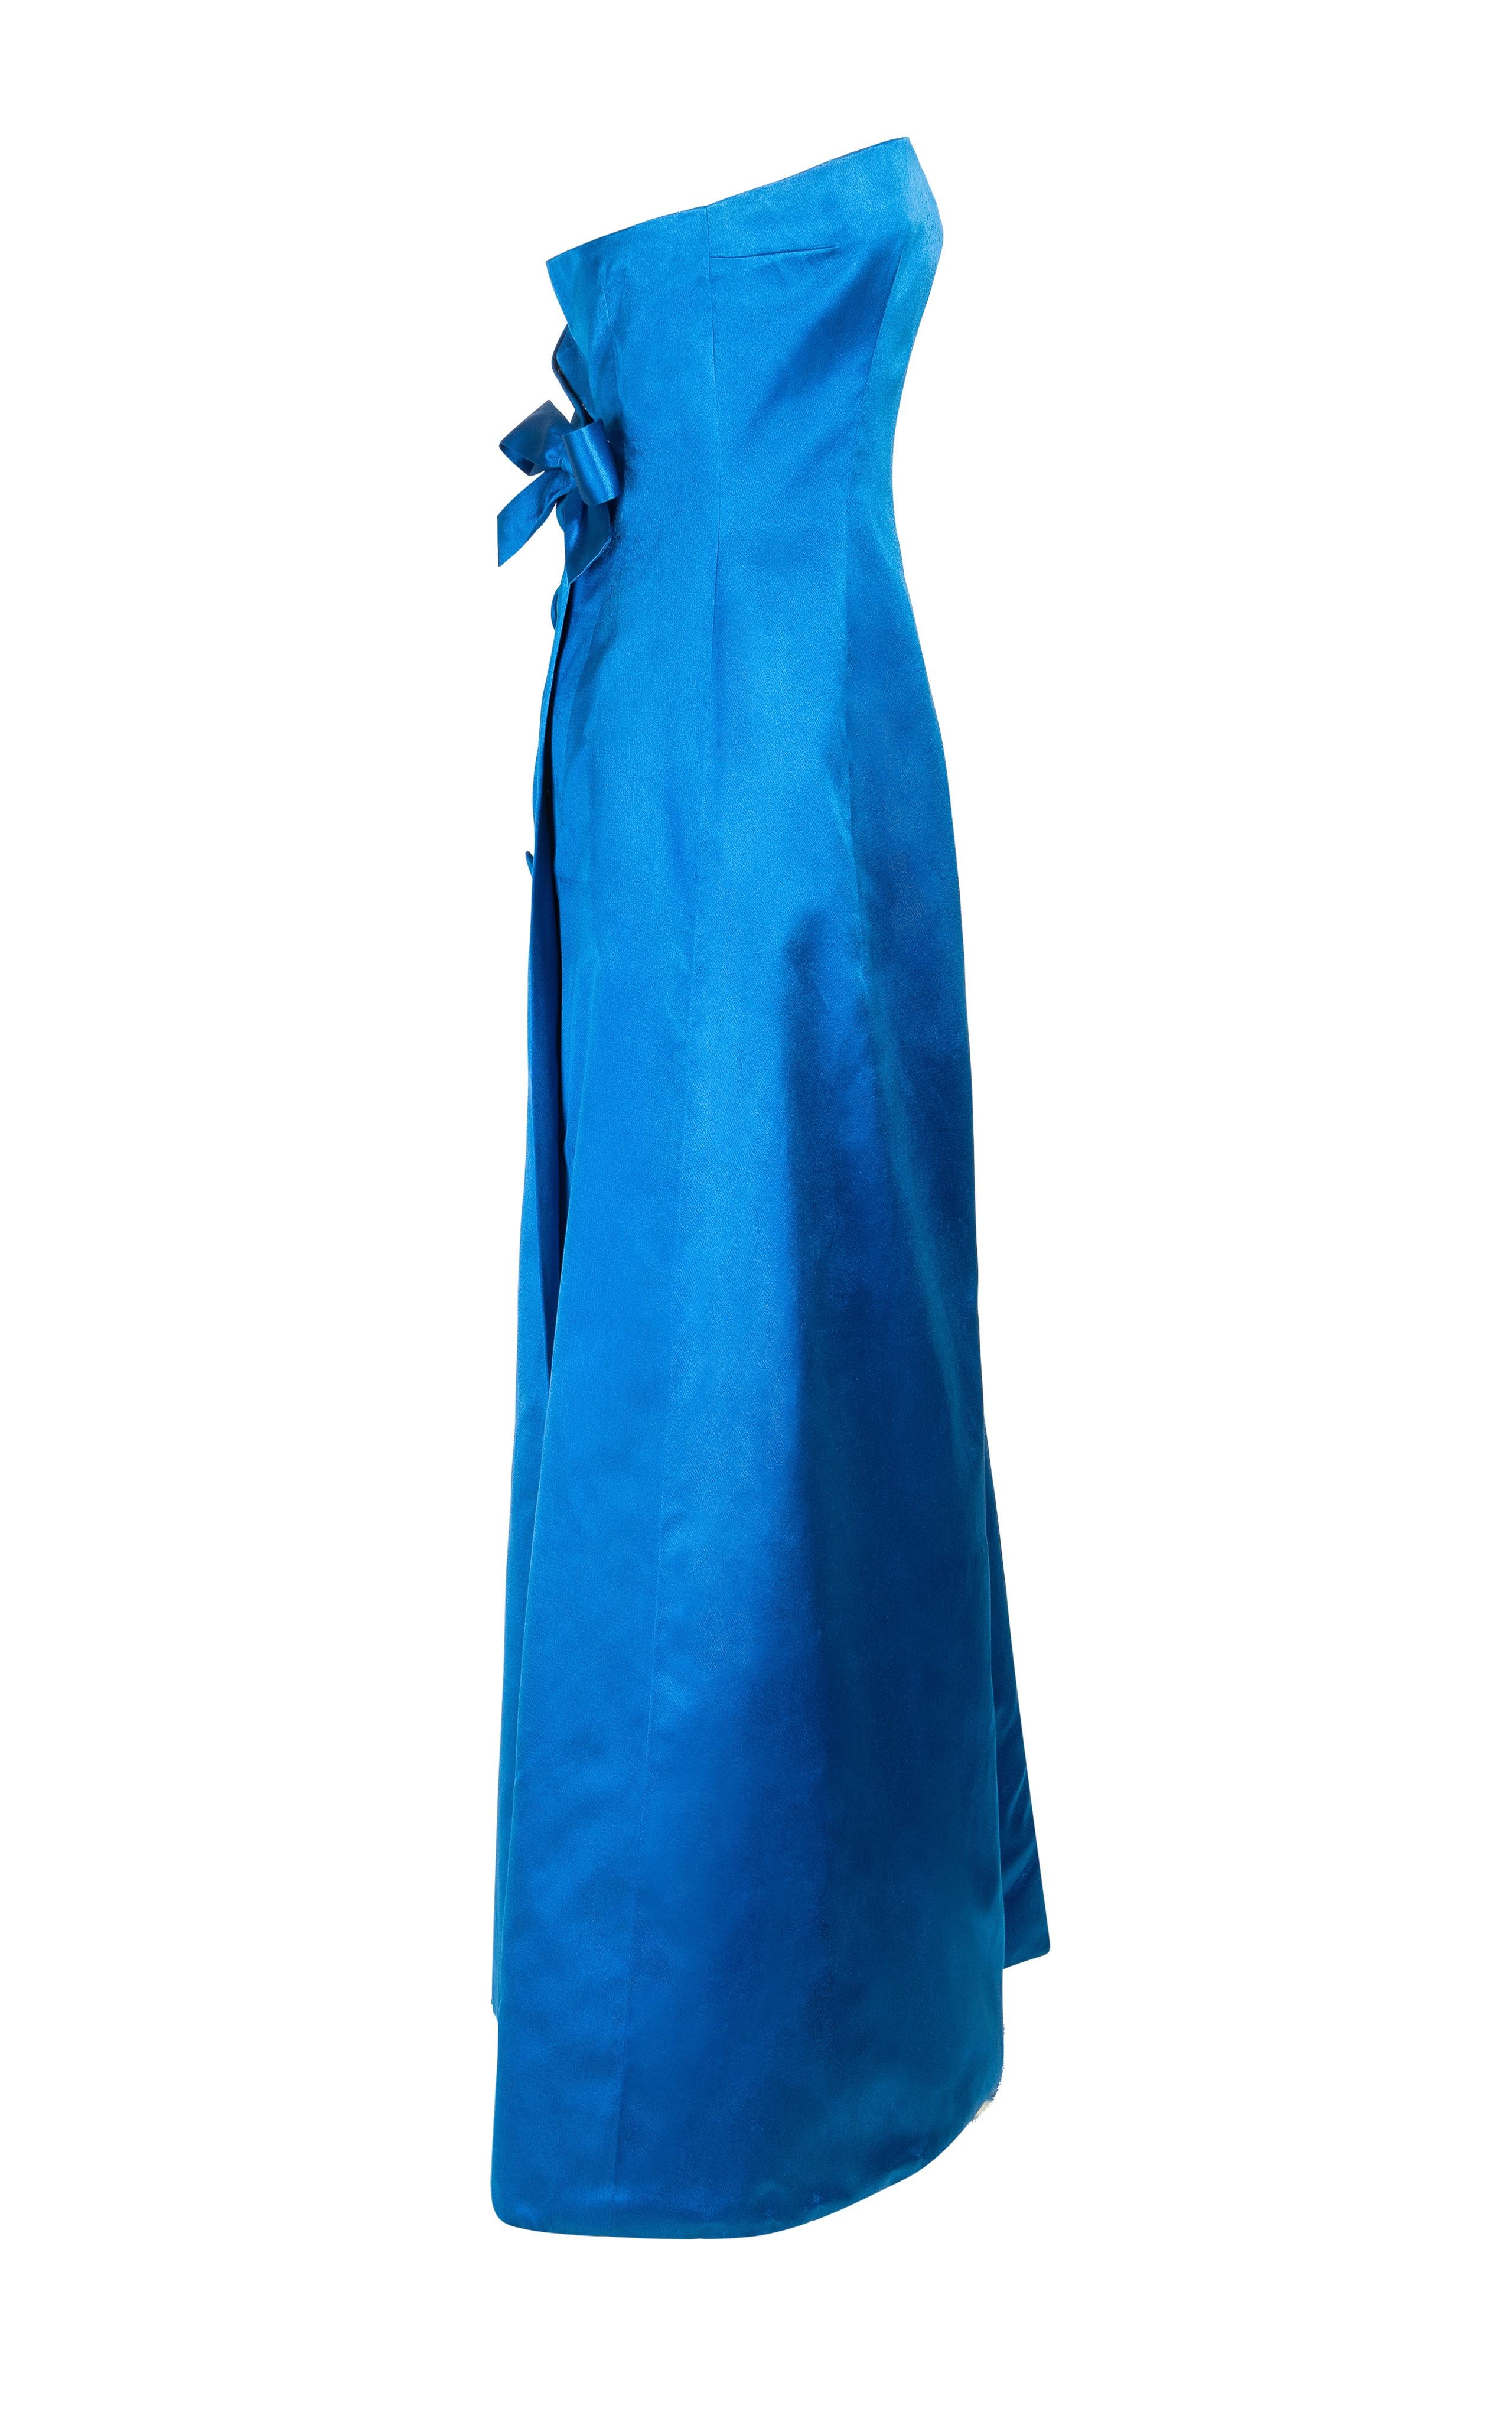 c. 1959 Jean Patou by Karl Lagerfeld Couture robe fourreau du soir bustier en satin bleu. Boutons en tissu surdimensionnés assortis et gros nœud au dos. Effet subtil d'enveloppement au dos avec croisement dans le dos. Corset intégré en maille nude,